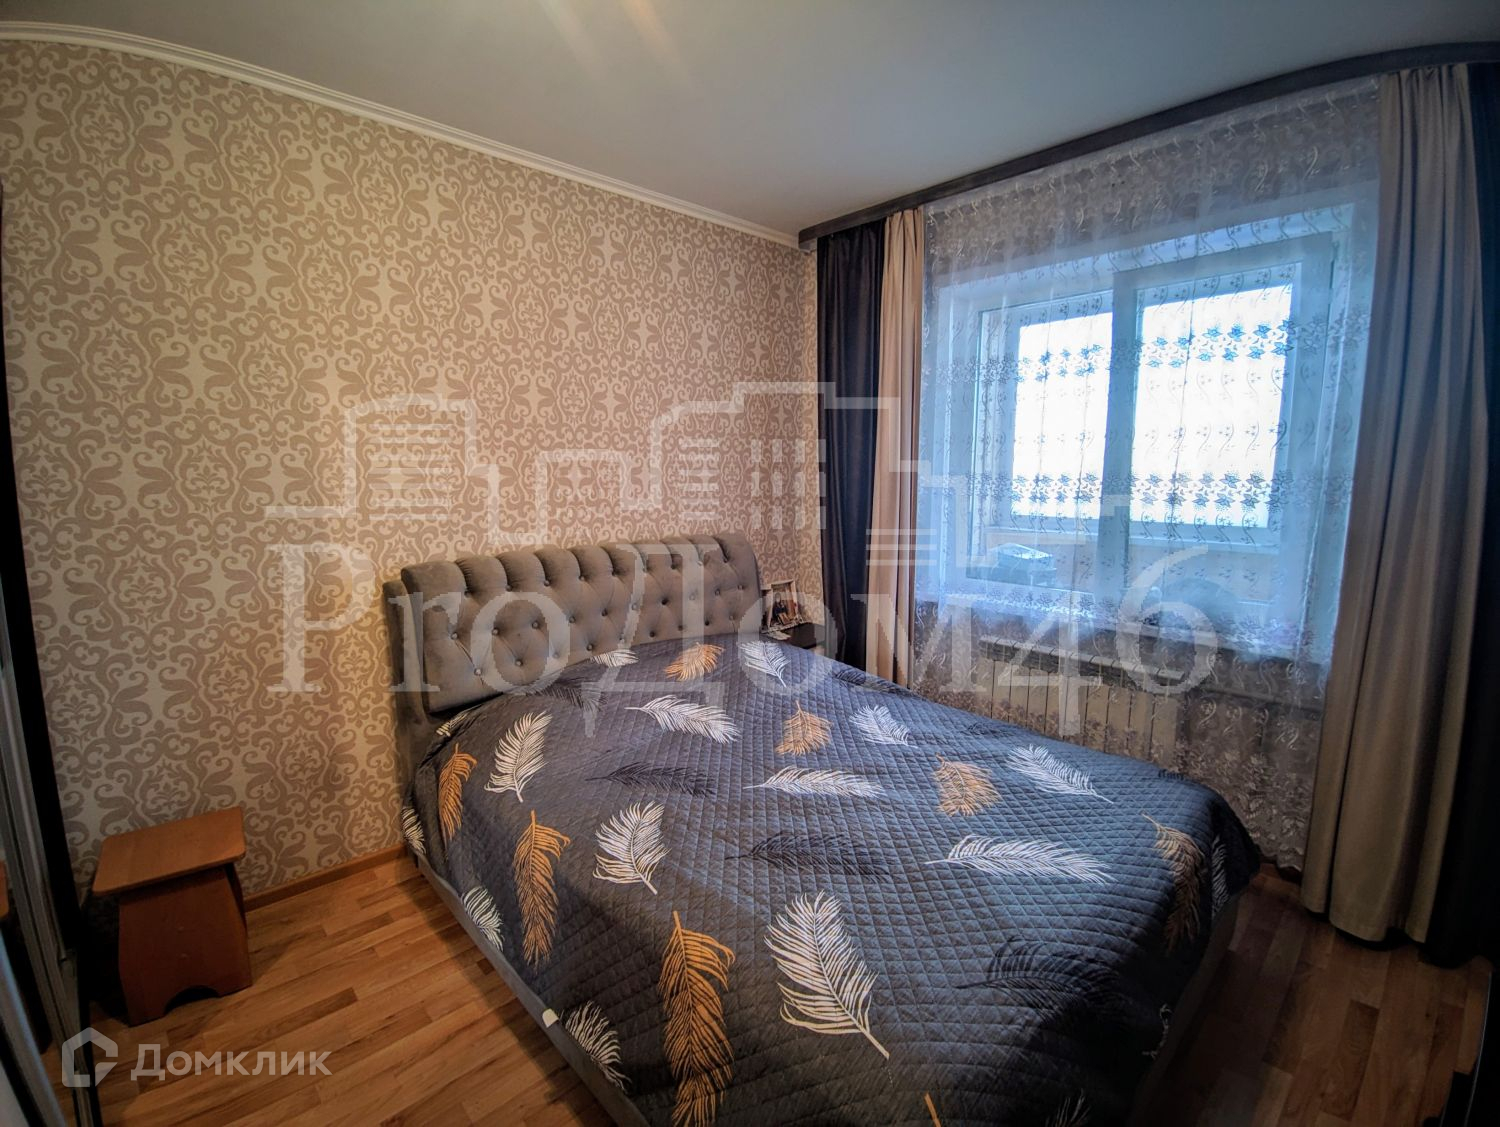 Купить комнатную квартиру курск северо запад. Курск улица Косухина новый район купить 4х комнатную квартиру.